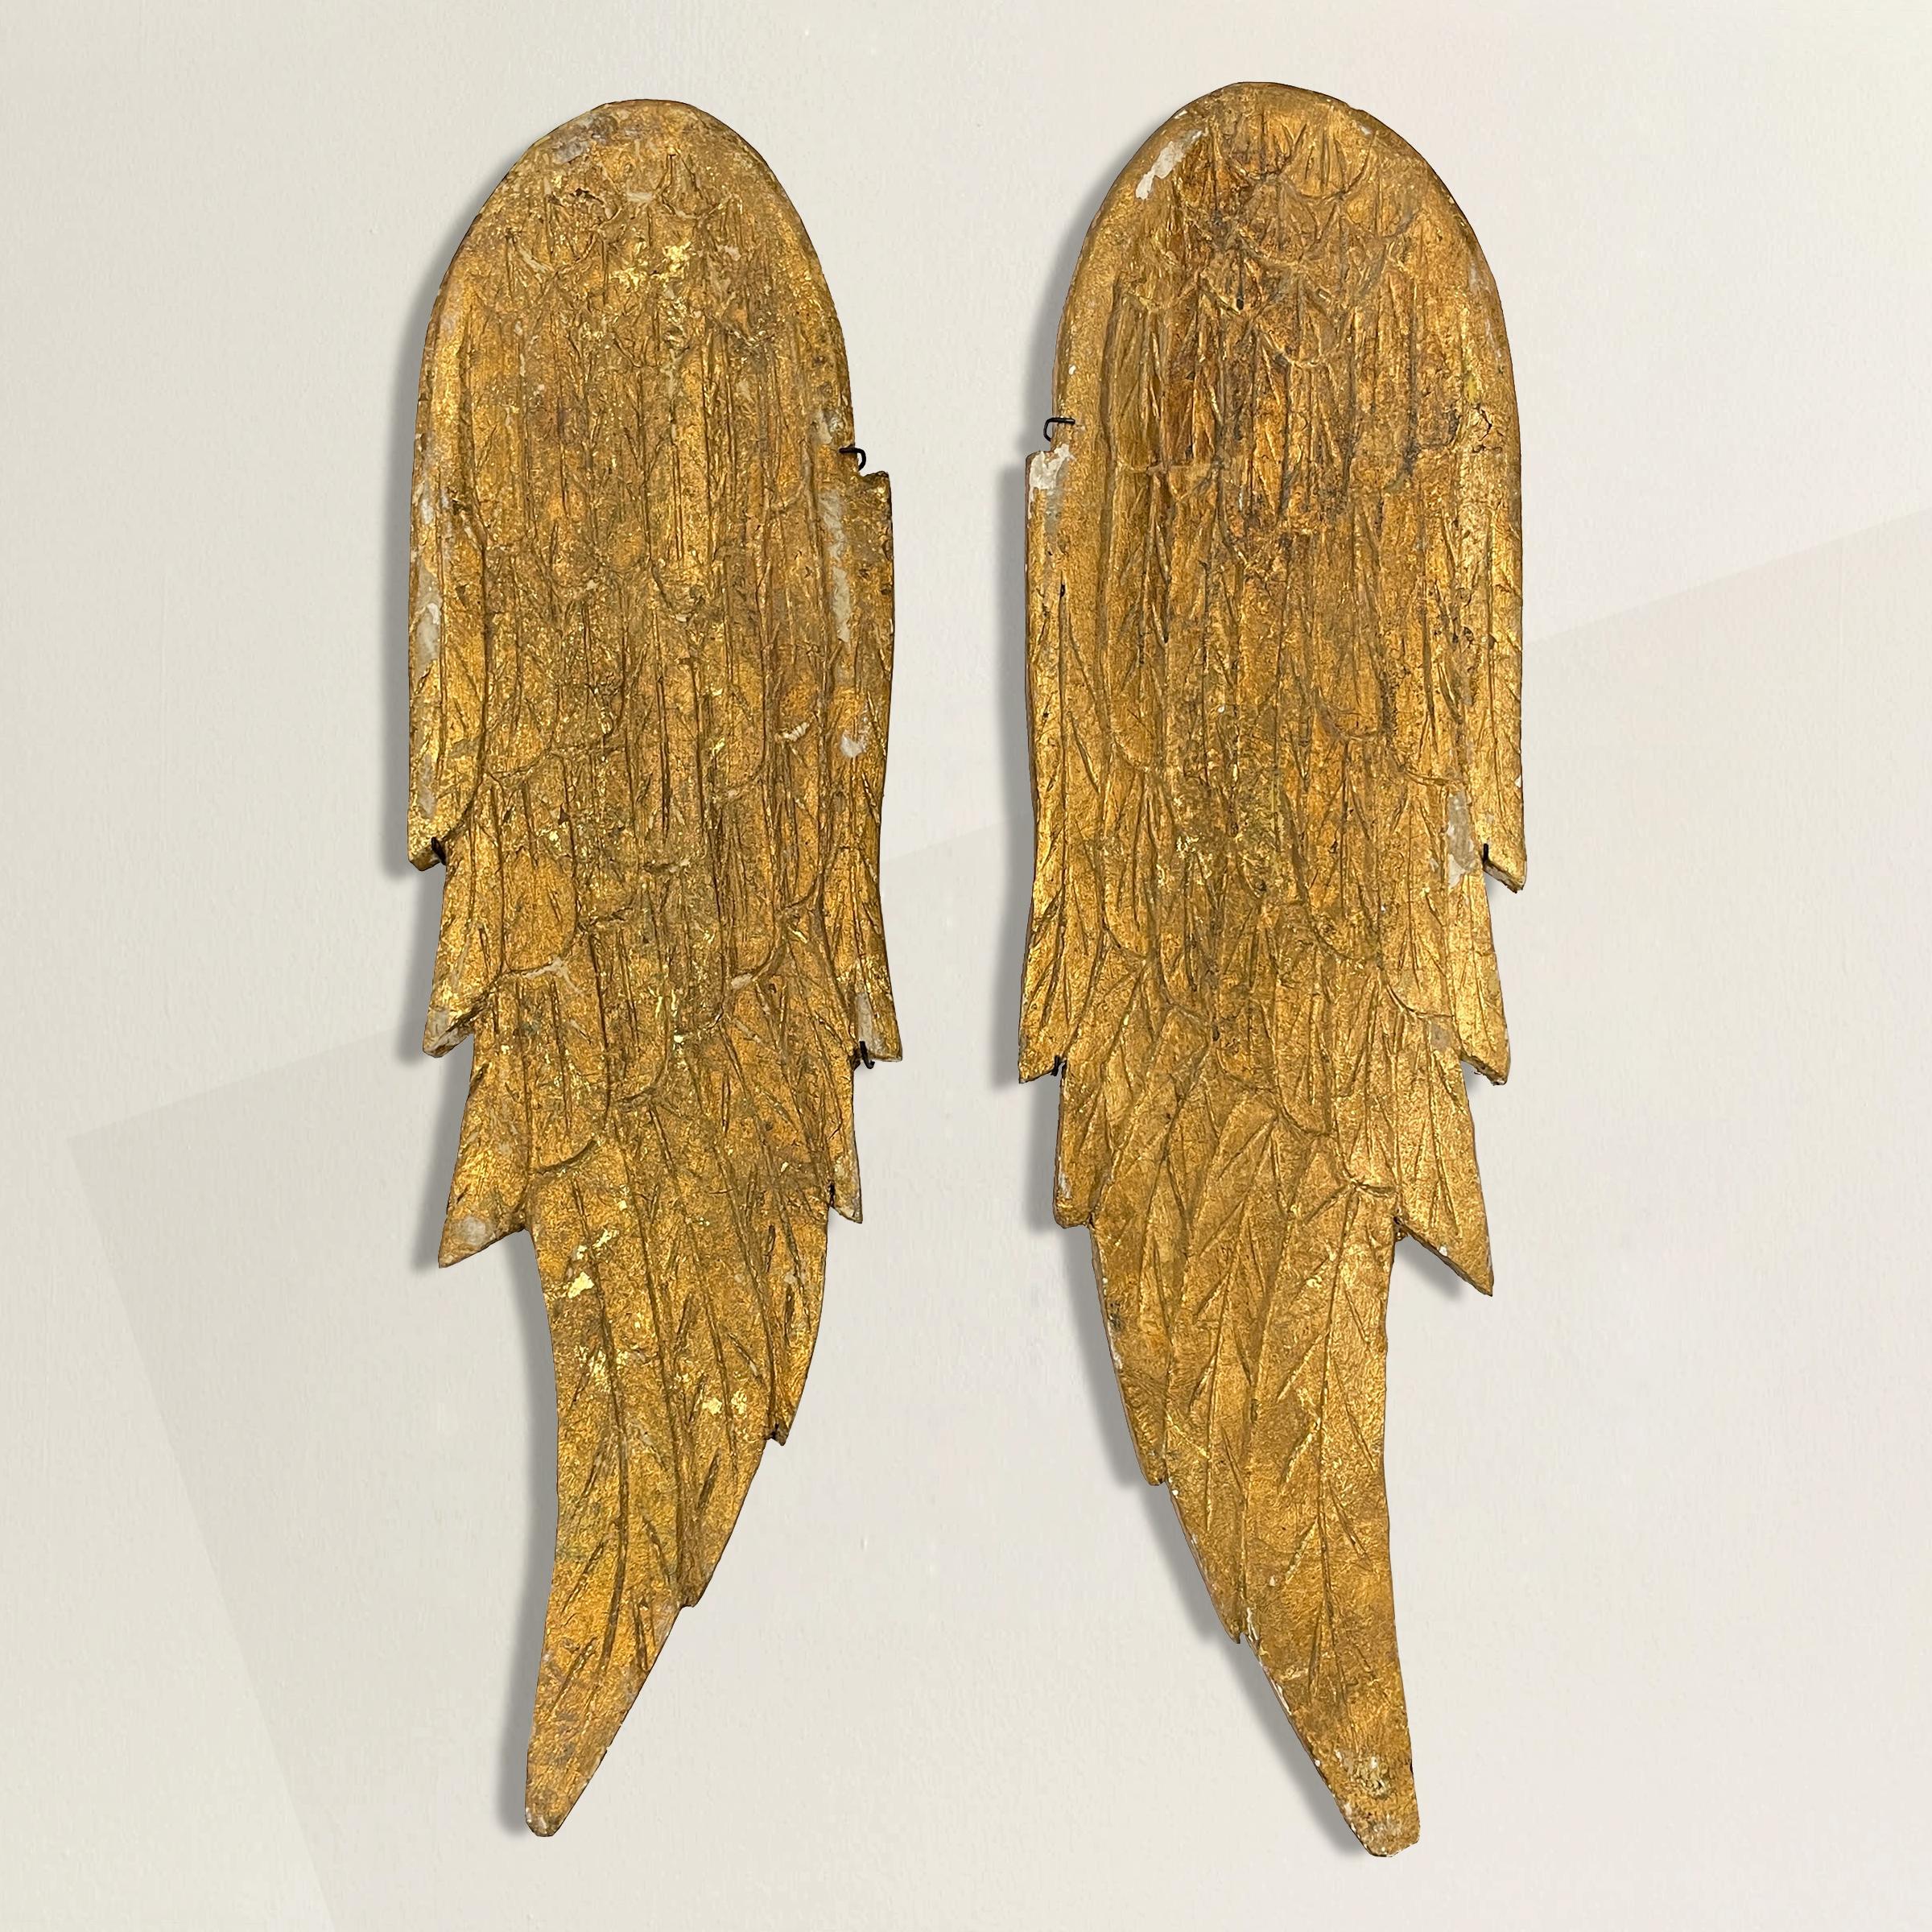 Modern Pair of Gilded Wood Angel Wings on Custom Wall Mounts